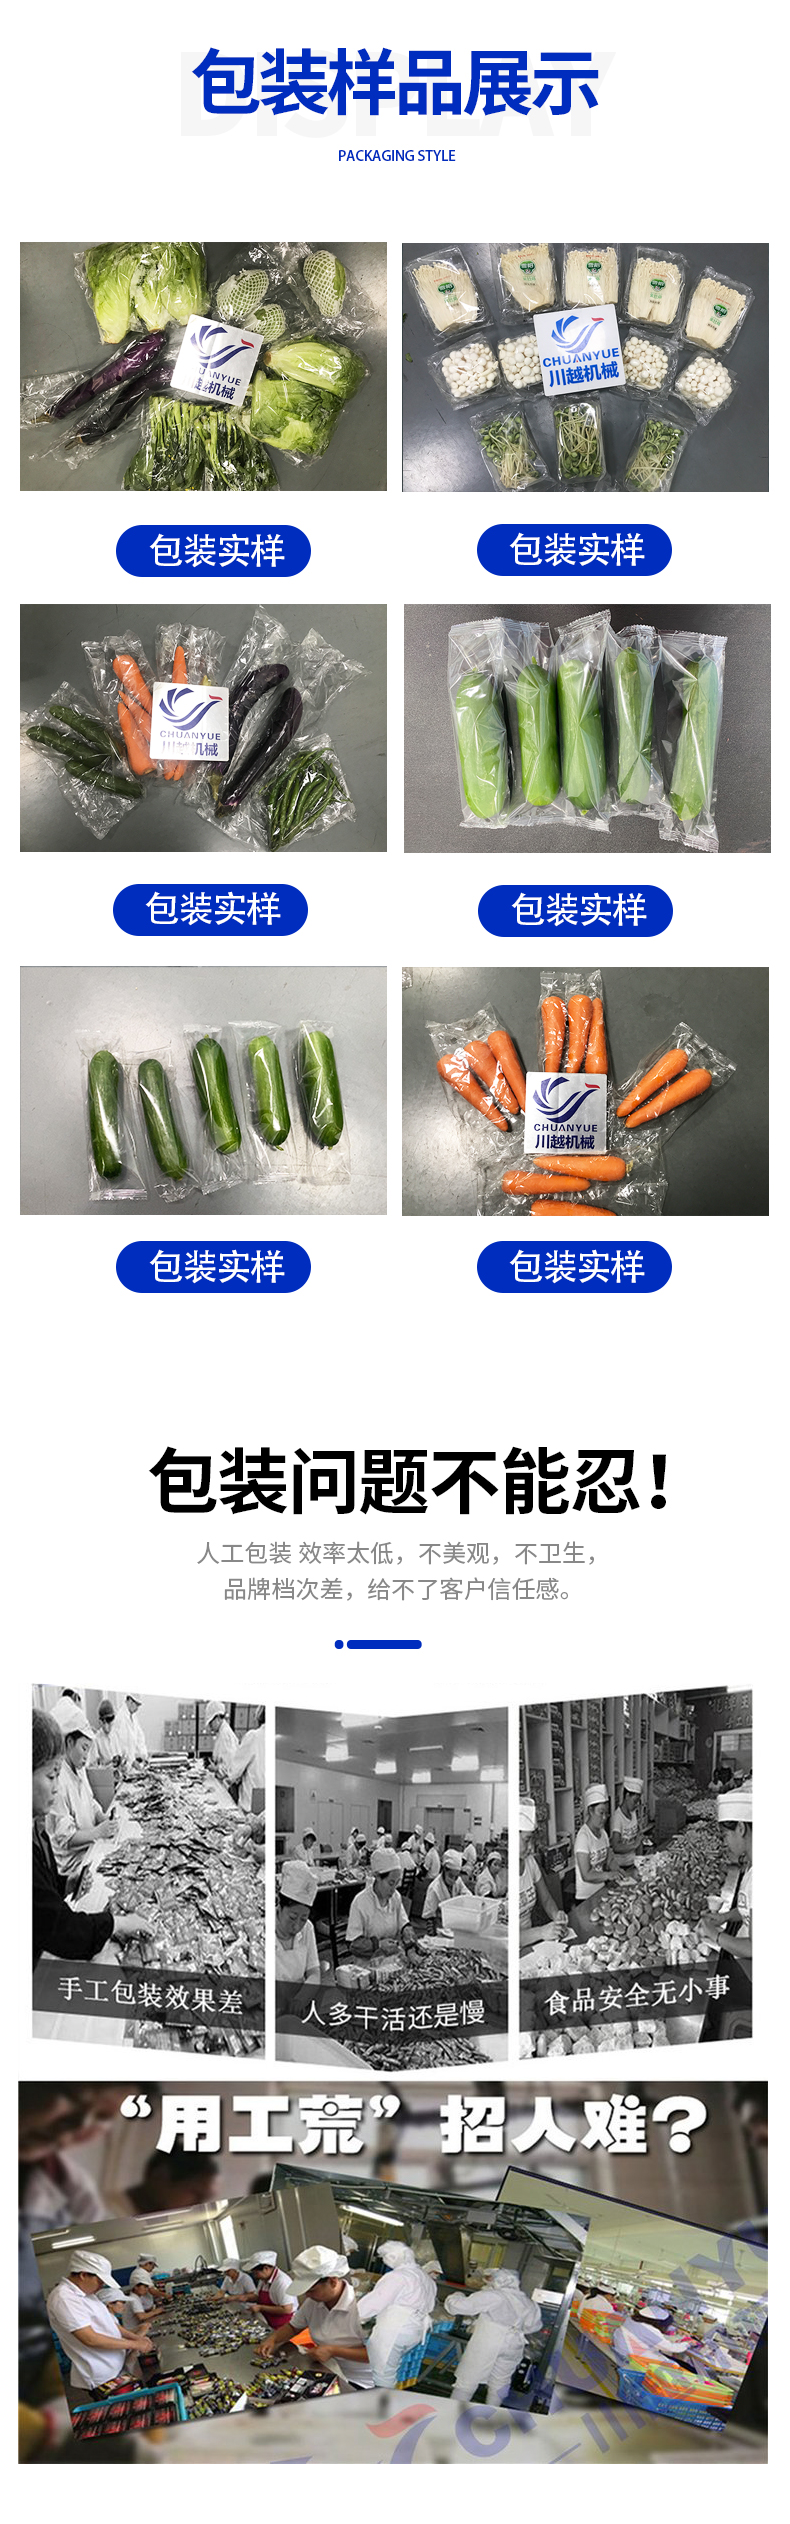 蔬菜包装机_02